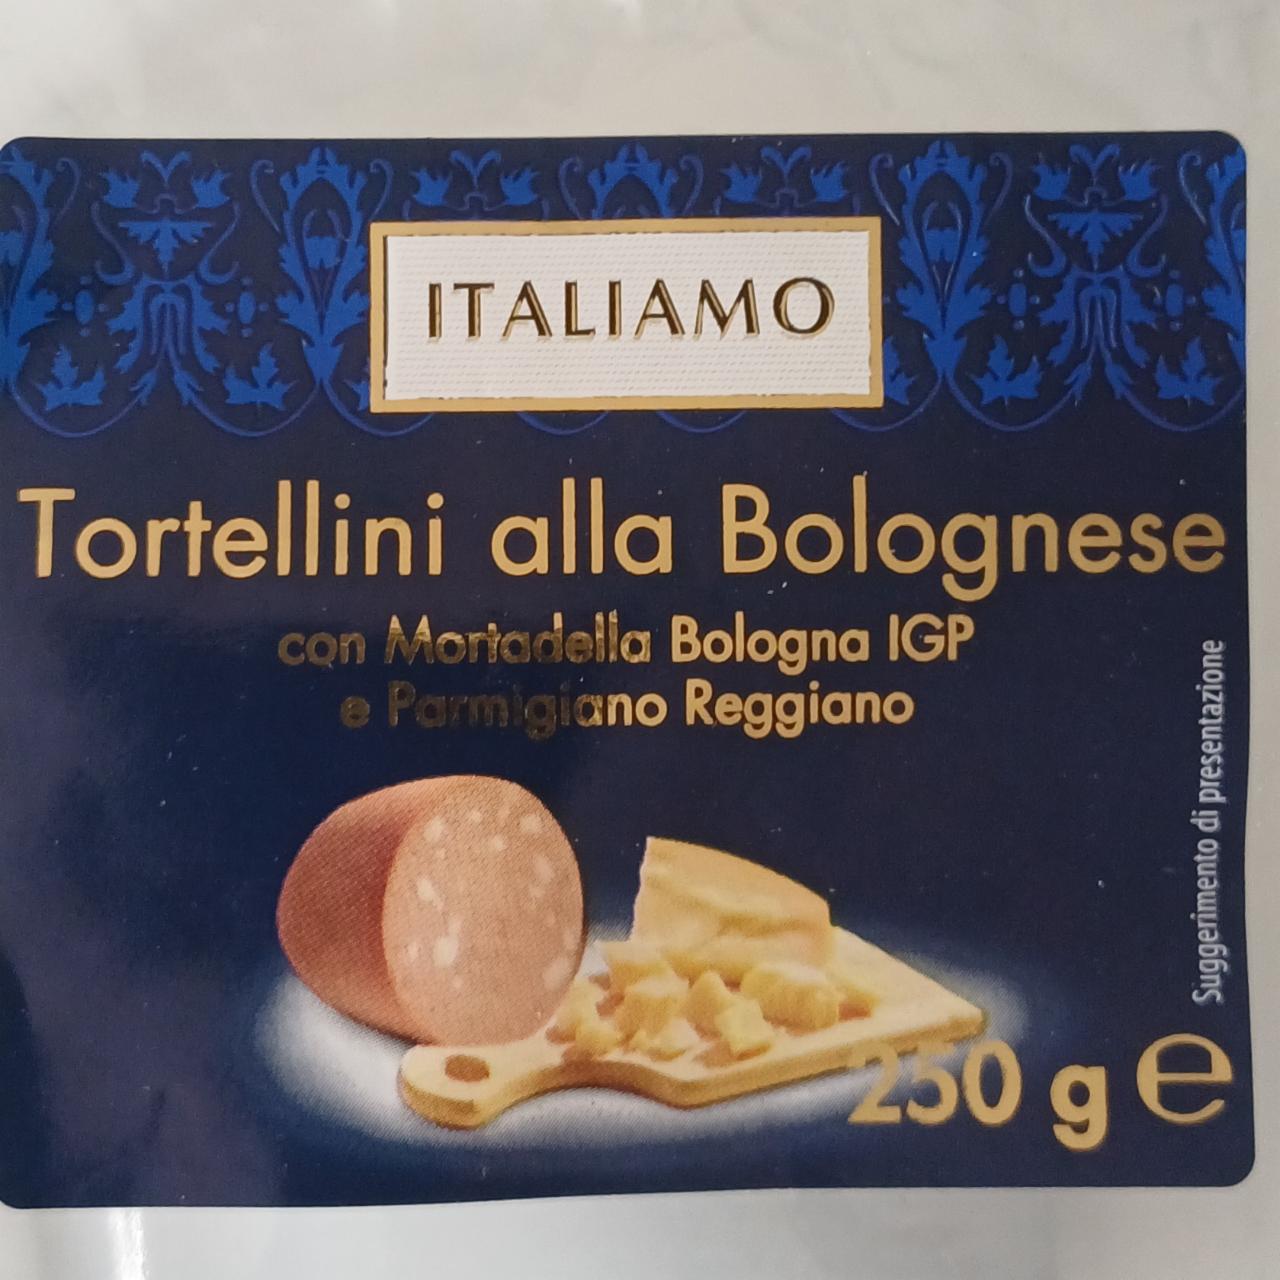 Fotografie - Tortellini alla Bolognese con Martadella Bologna IGP e Parmigiano Reggiano Italiamo